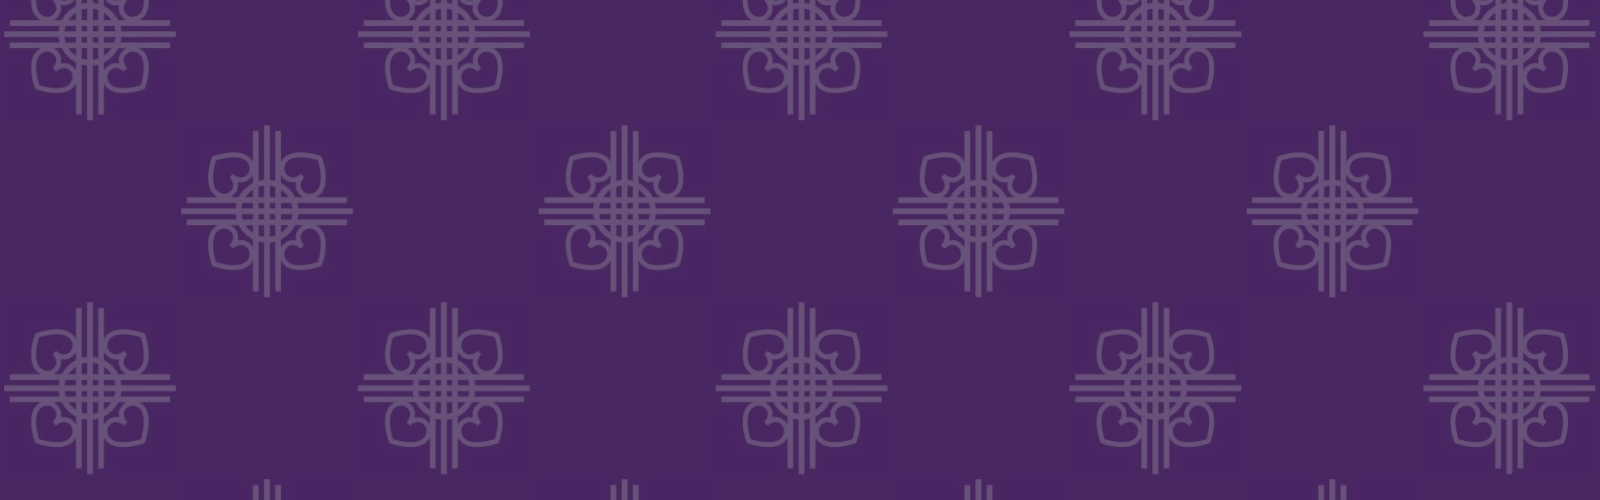 Kirkens Korshærs logo med navn